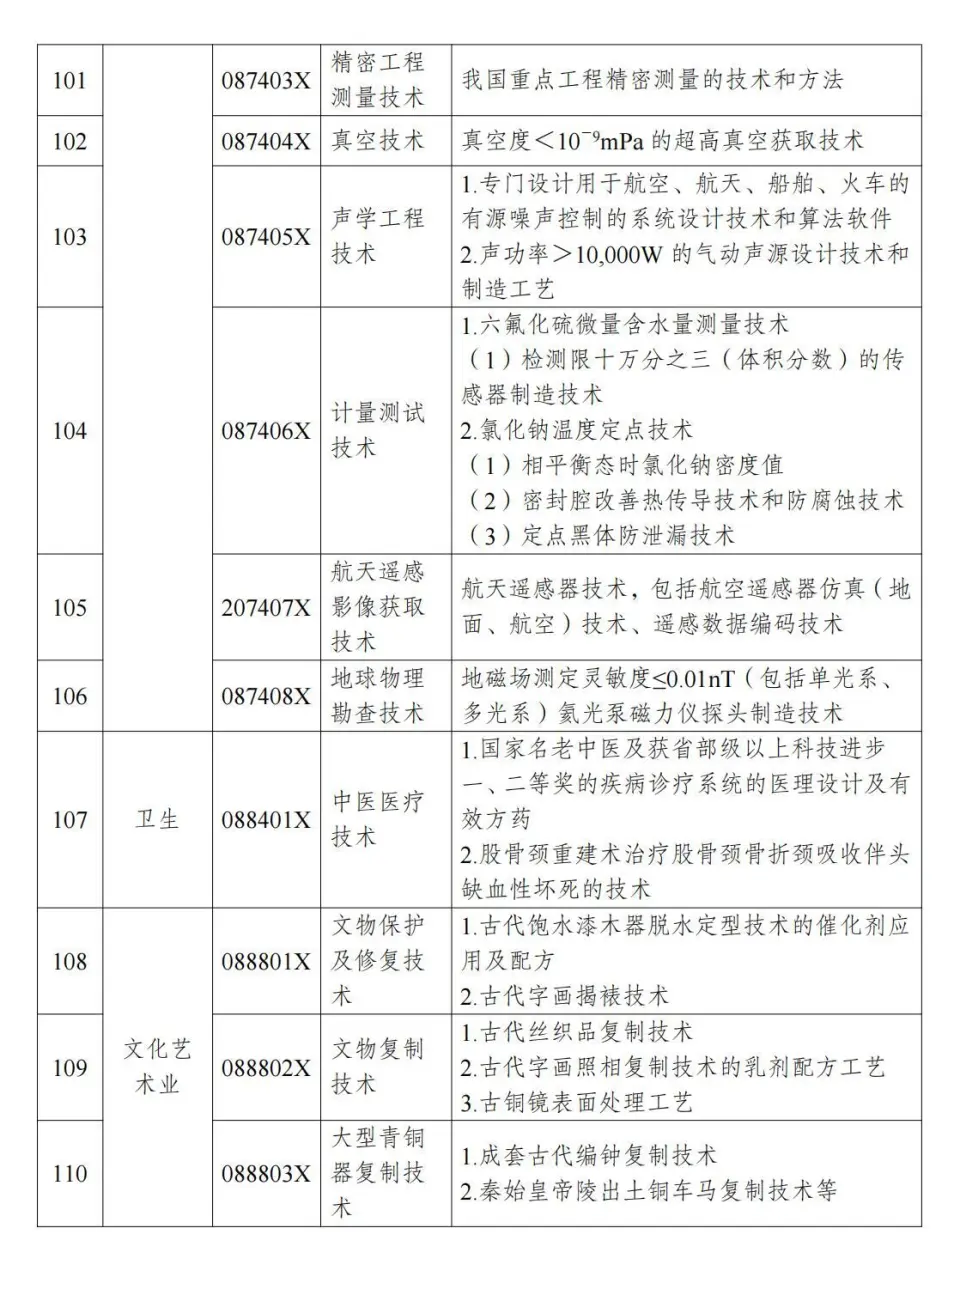 两部分公布《中国制止出口限制出口技术目录》 第24张图片